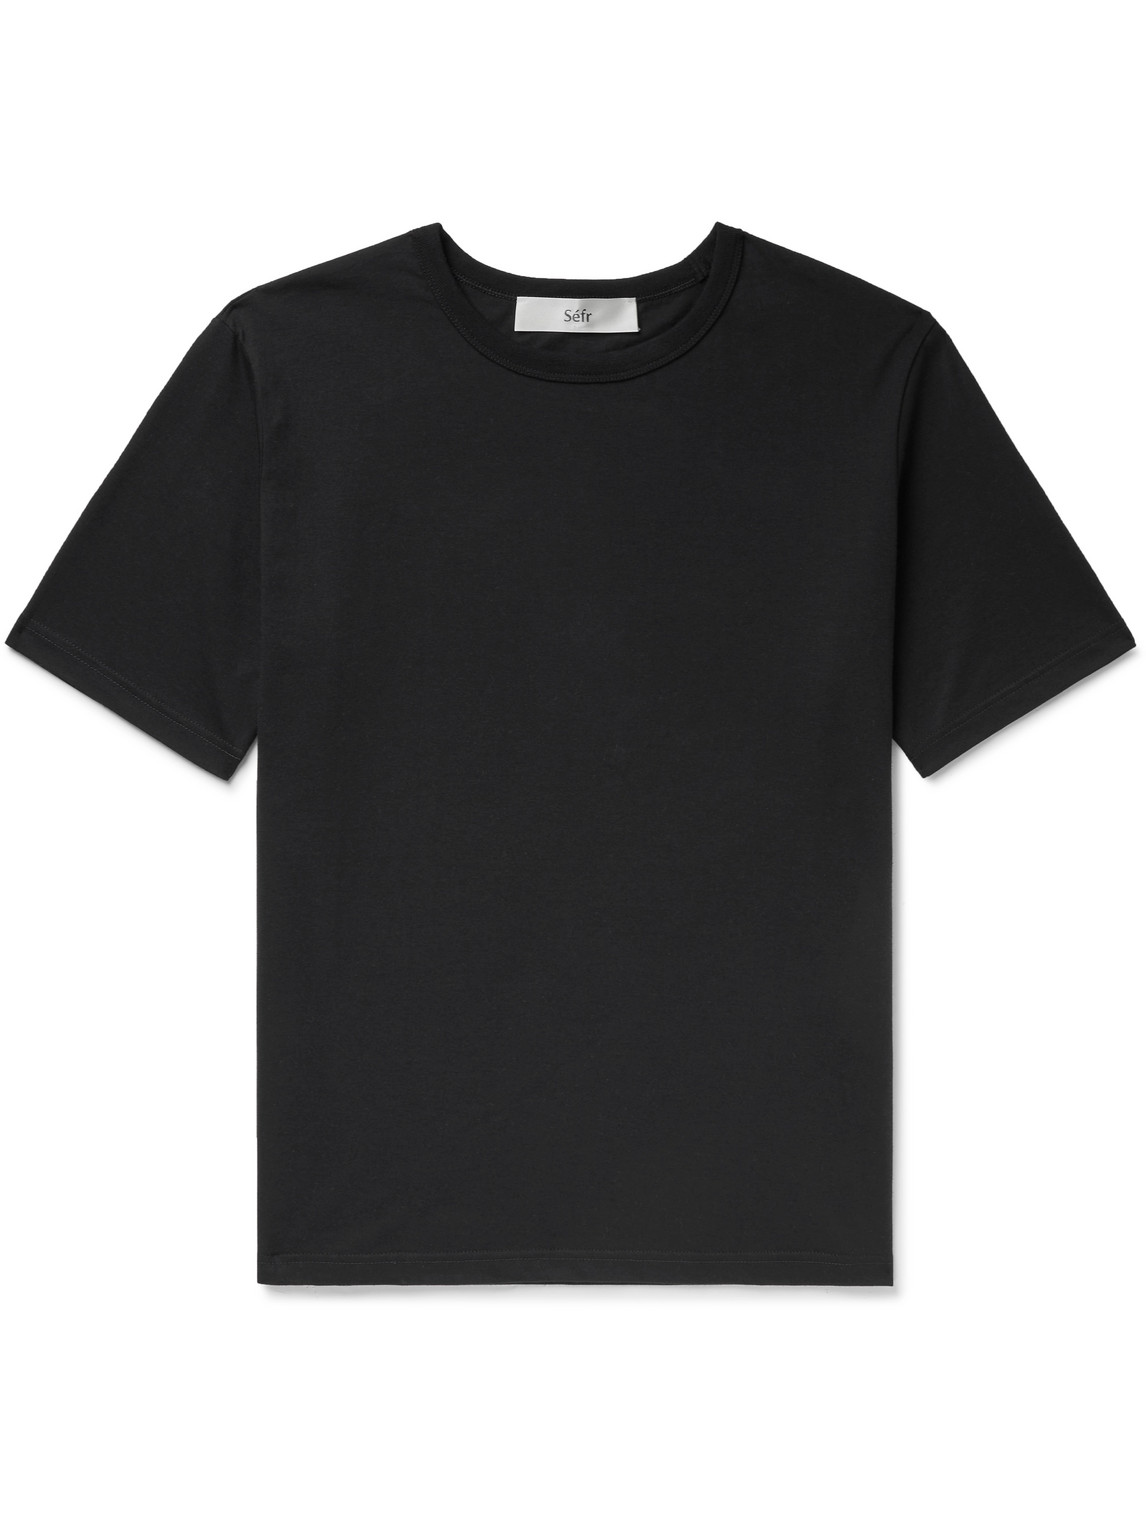 Séfr Luca Cotton-Blend Jersey T-Shirt